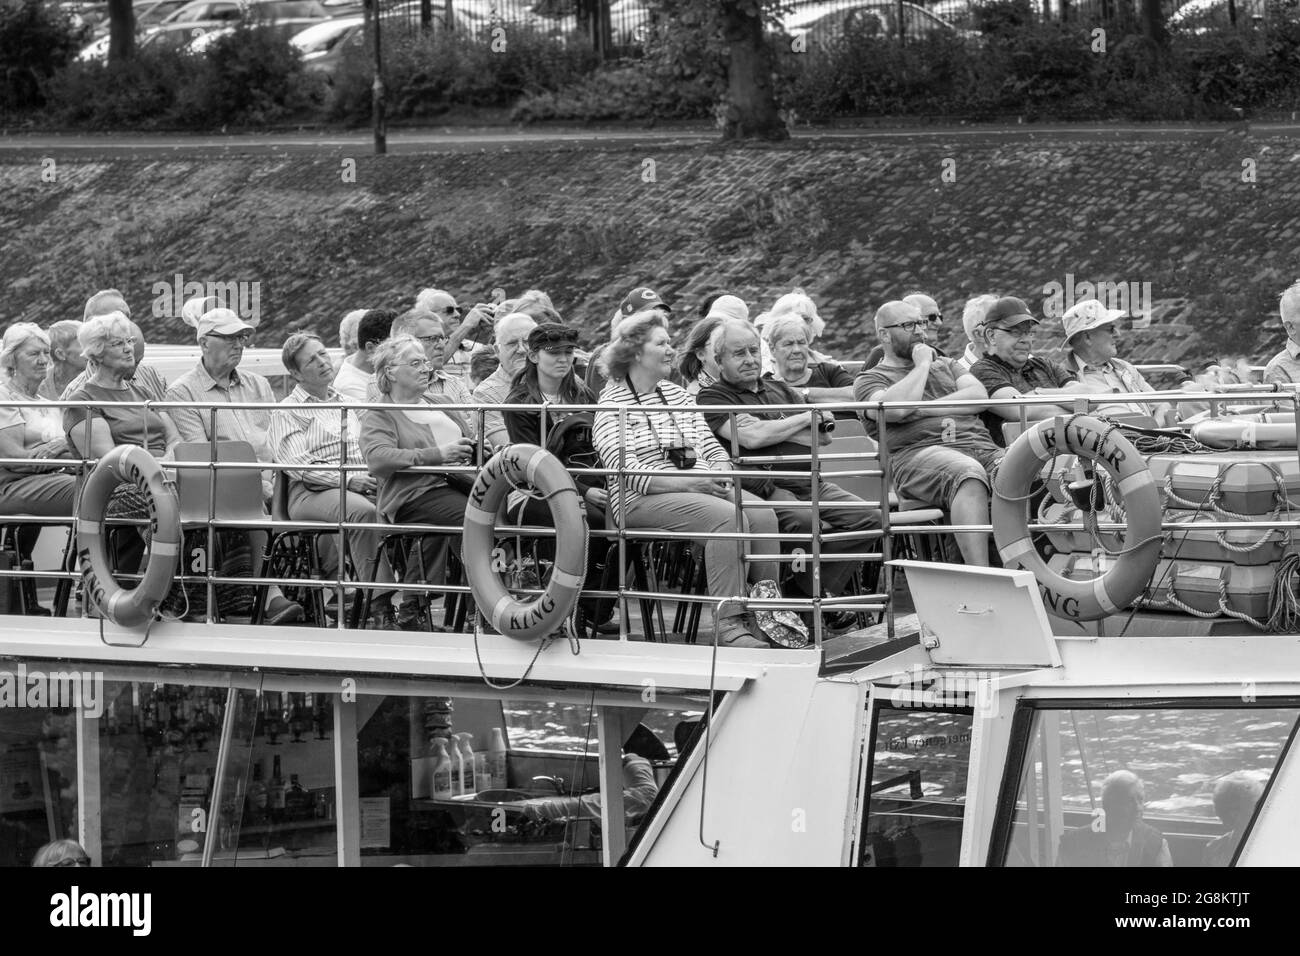 Les touristes se sont assis sur le pont supérieur d'un bateau de croisière en profitant d'une excursion le long de la rivière Ouse, York, North Yorkshire, Angleterre, Royaume-Uni. Banque D'Images